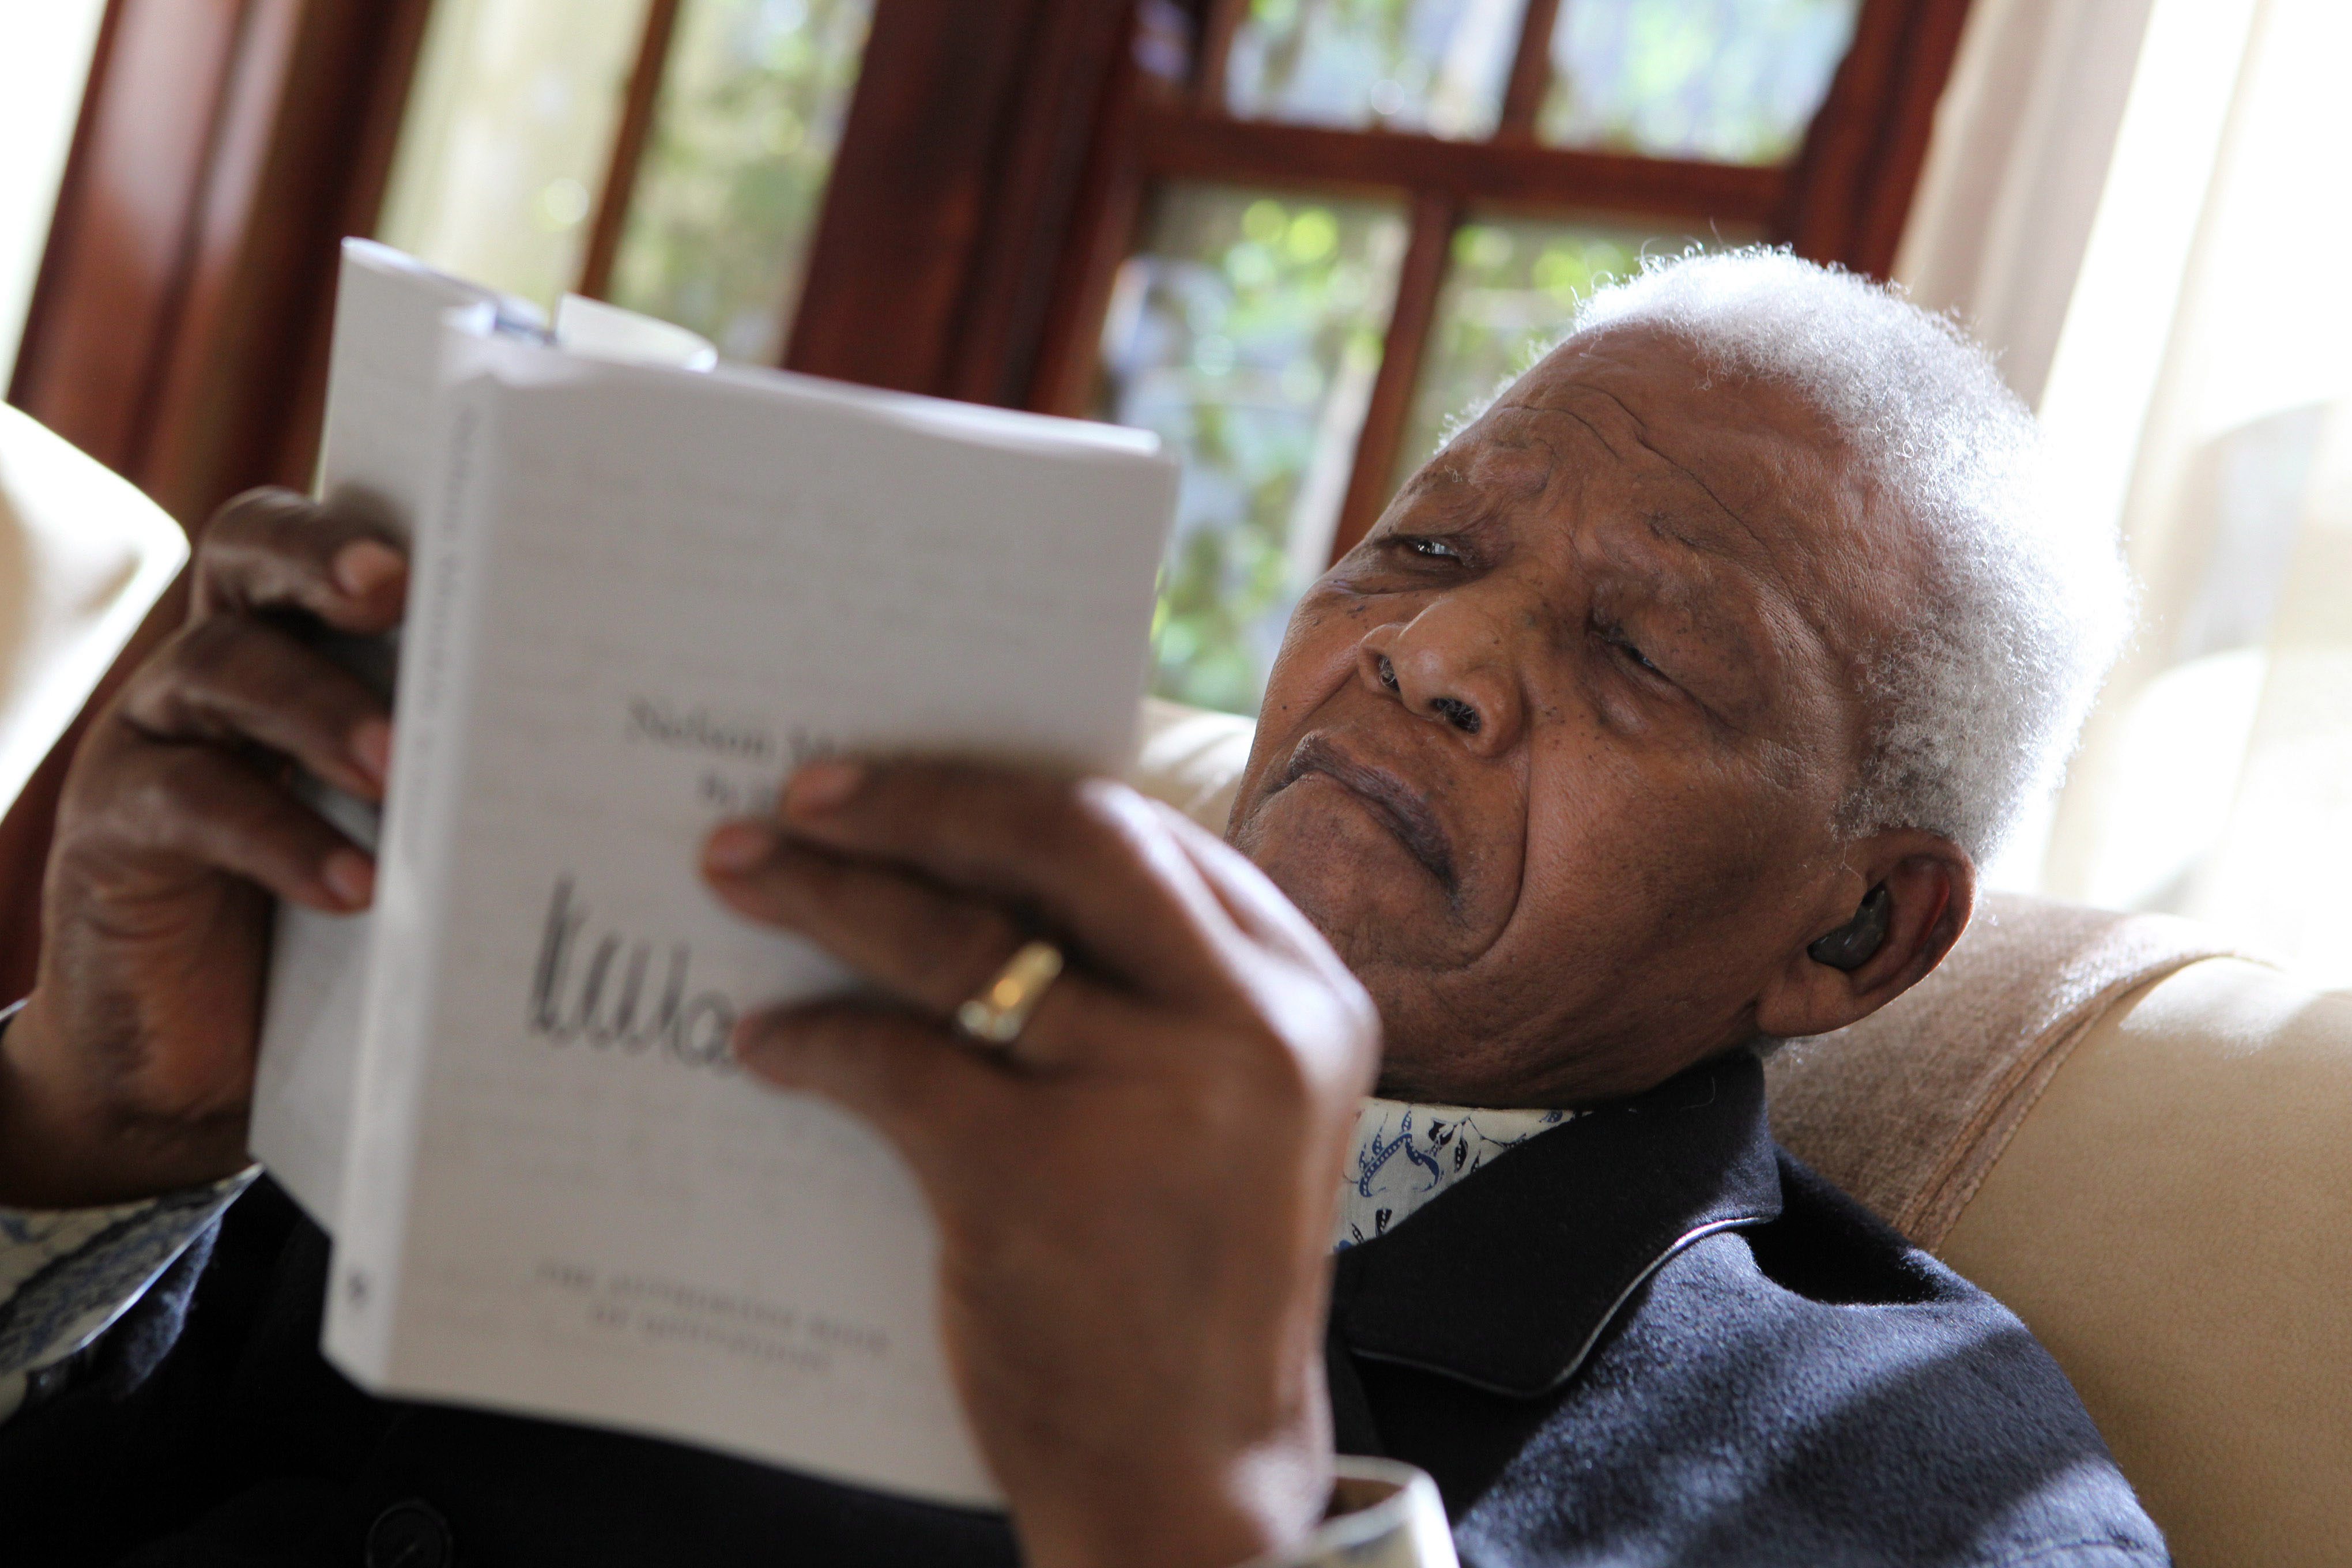 Oud-president Nelson Mandela van Zuid-Afrika heeft het ziekenhuis verlaten en is weer thuis in zijn woning in Johannesburg, meldde de BBC zaterdag. De 95-jarige Mandela werd op 8 juni in een ziekenhuis in Pretoria opgenomen wegens een chronische longinfectie. Zijn toestand was lange tijd kritiek. Vorige week werd zijn toestand nog aangeduid als kritiek maar stabiel. Mandela zat 27 jaar gevangen vanwege zijn strijd tegen de apartheid, waarvan 18 jaar op Robbeneiland. Daar liep hij een longaandoening op. Hij won in 1993 de Nobelprijs voor de Vrede en werd een jaar later de eerste zwarte president van Zuid-Afrika. Hij trad af in 1999.